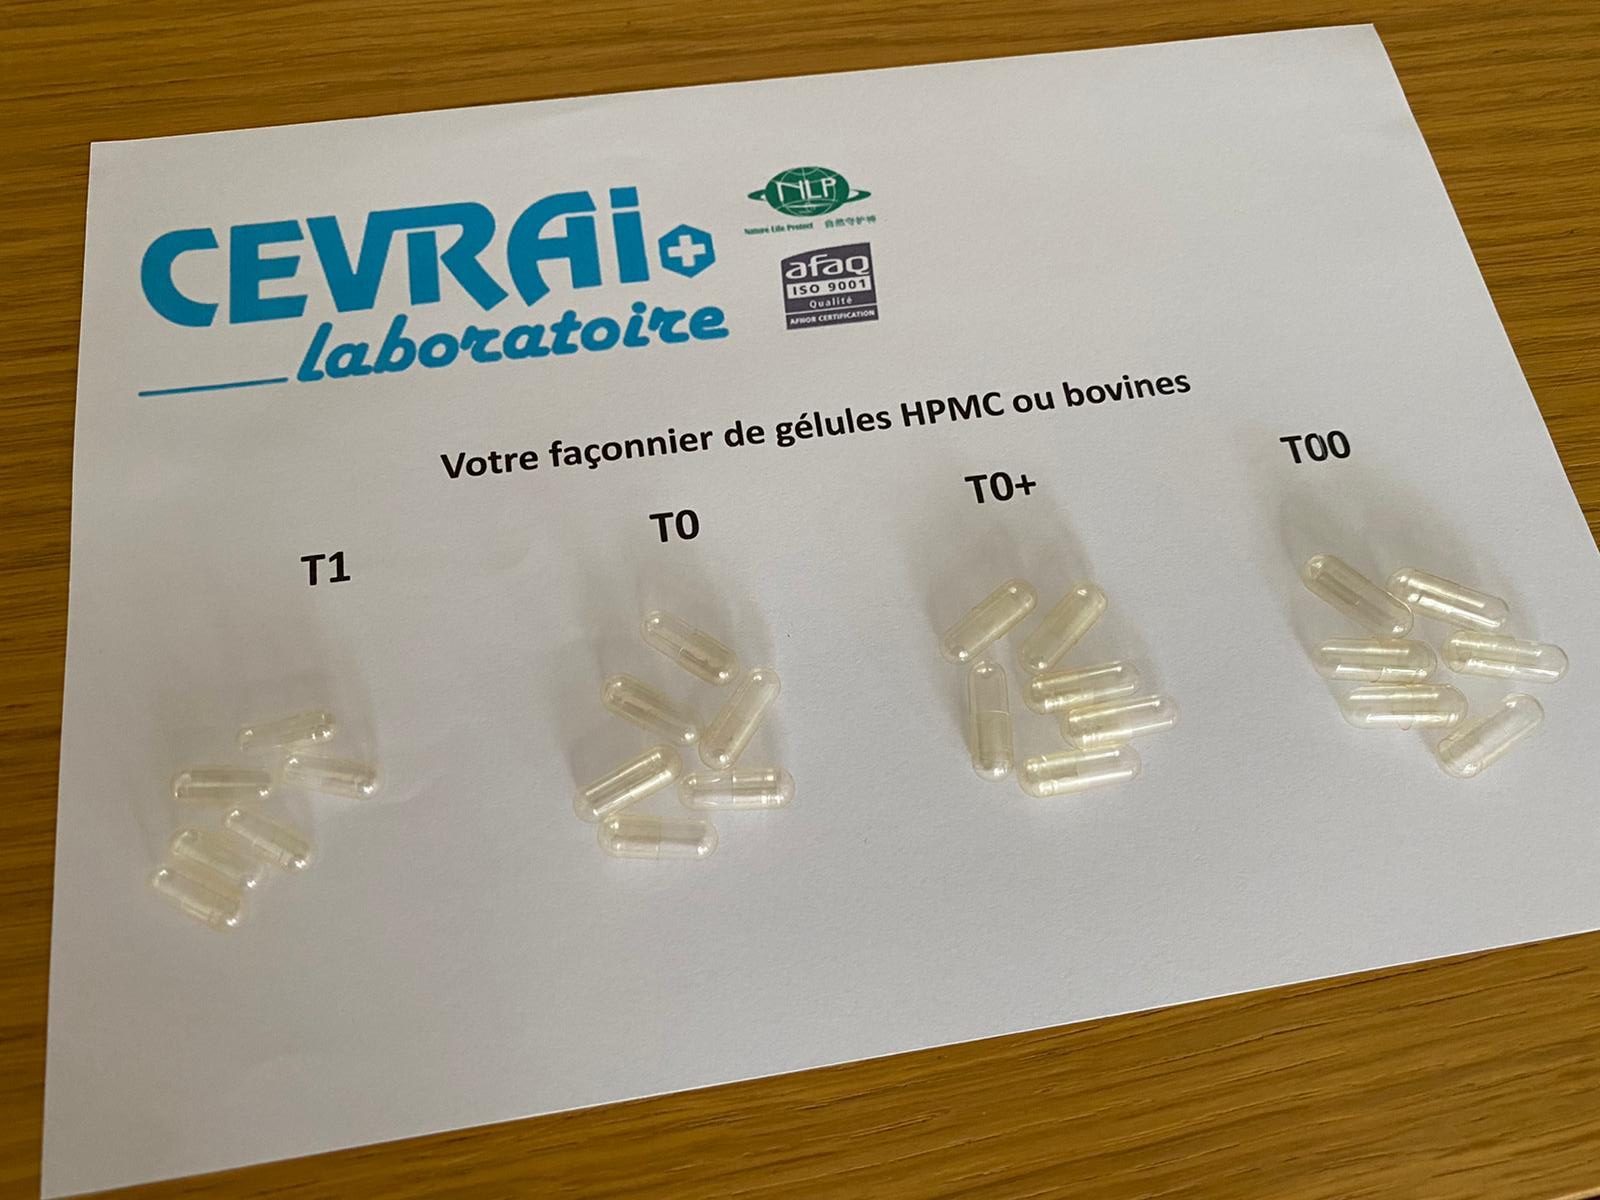 Laboratoire CEVRAI fabrication façonnage gélules blister pilulier doypack HPMC bovine